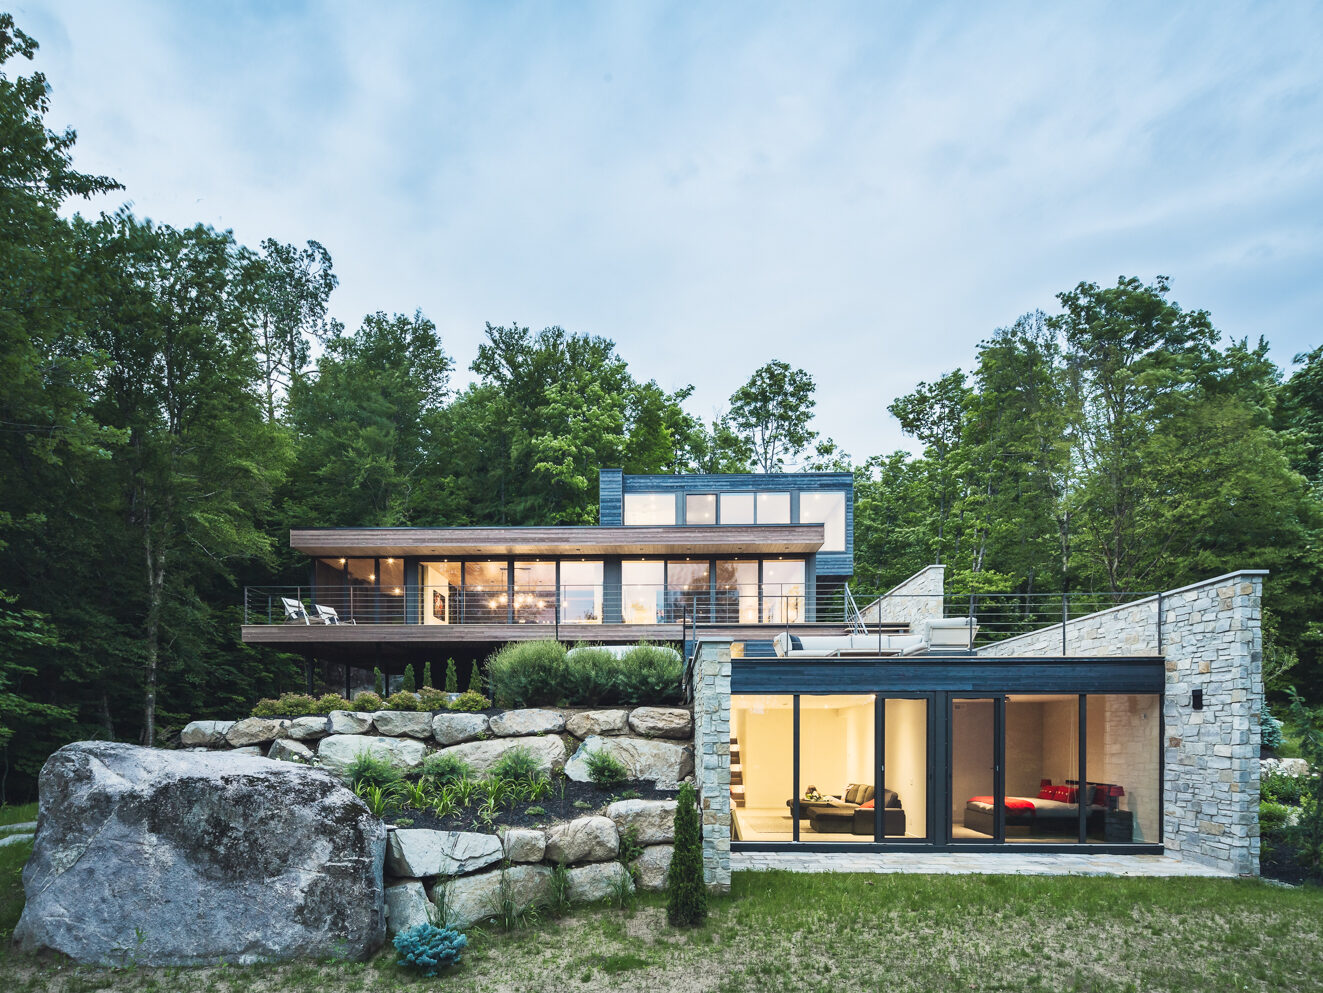 Kanadská rezidence nad jezerem zajímavě kombinuje materiály a zapadá do krajiny